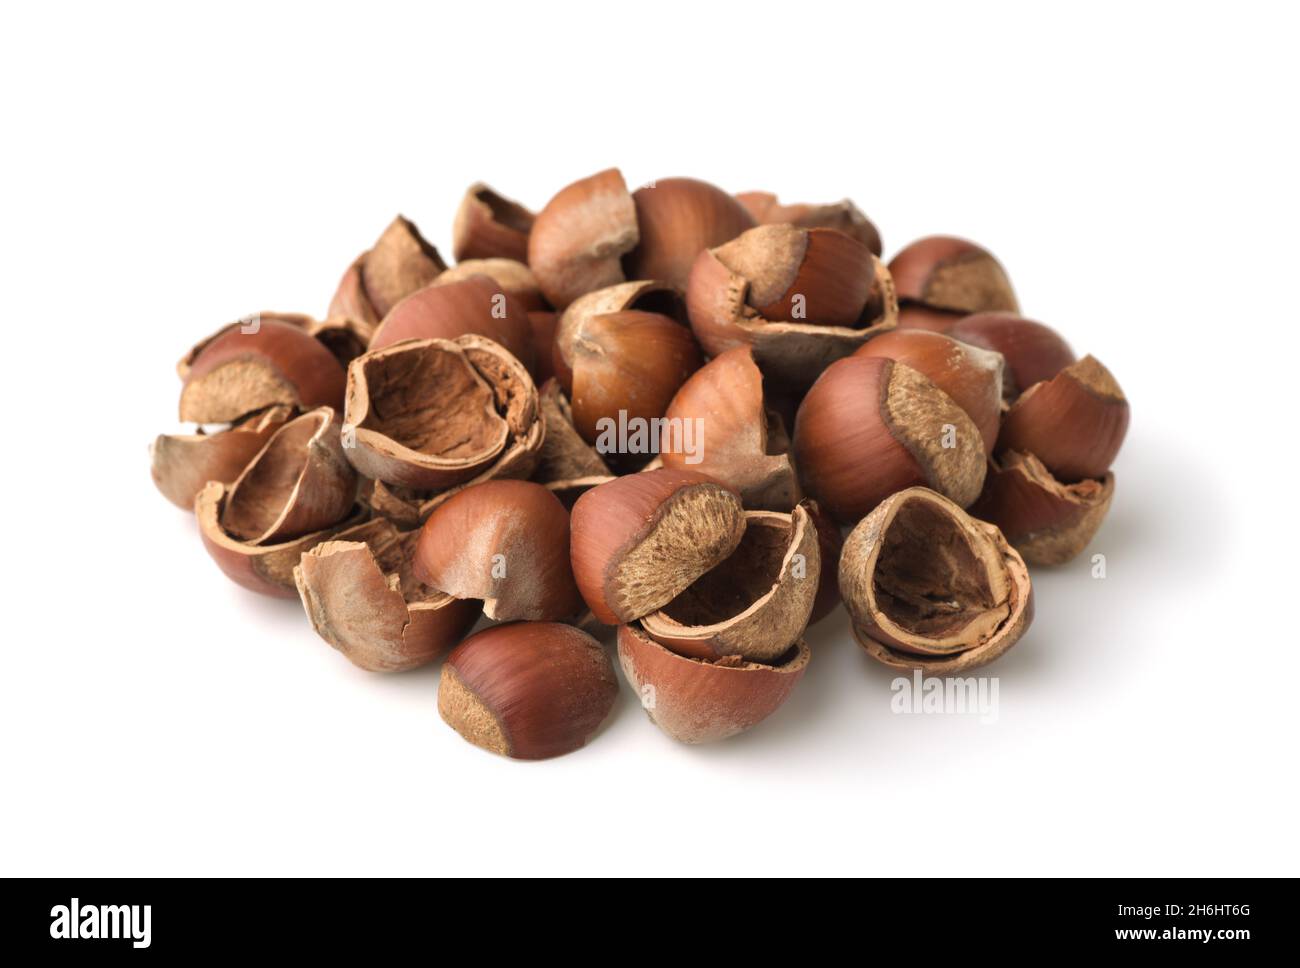 Pile of empty cracked hazelnut shells isolated on white Stock Photo